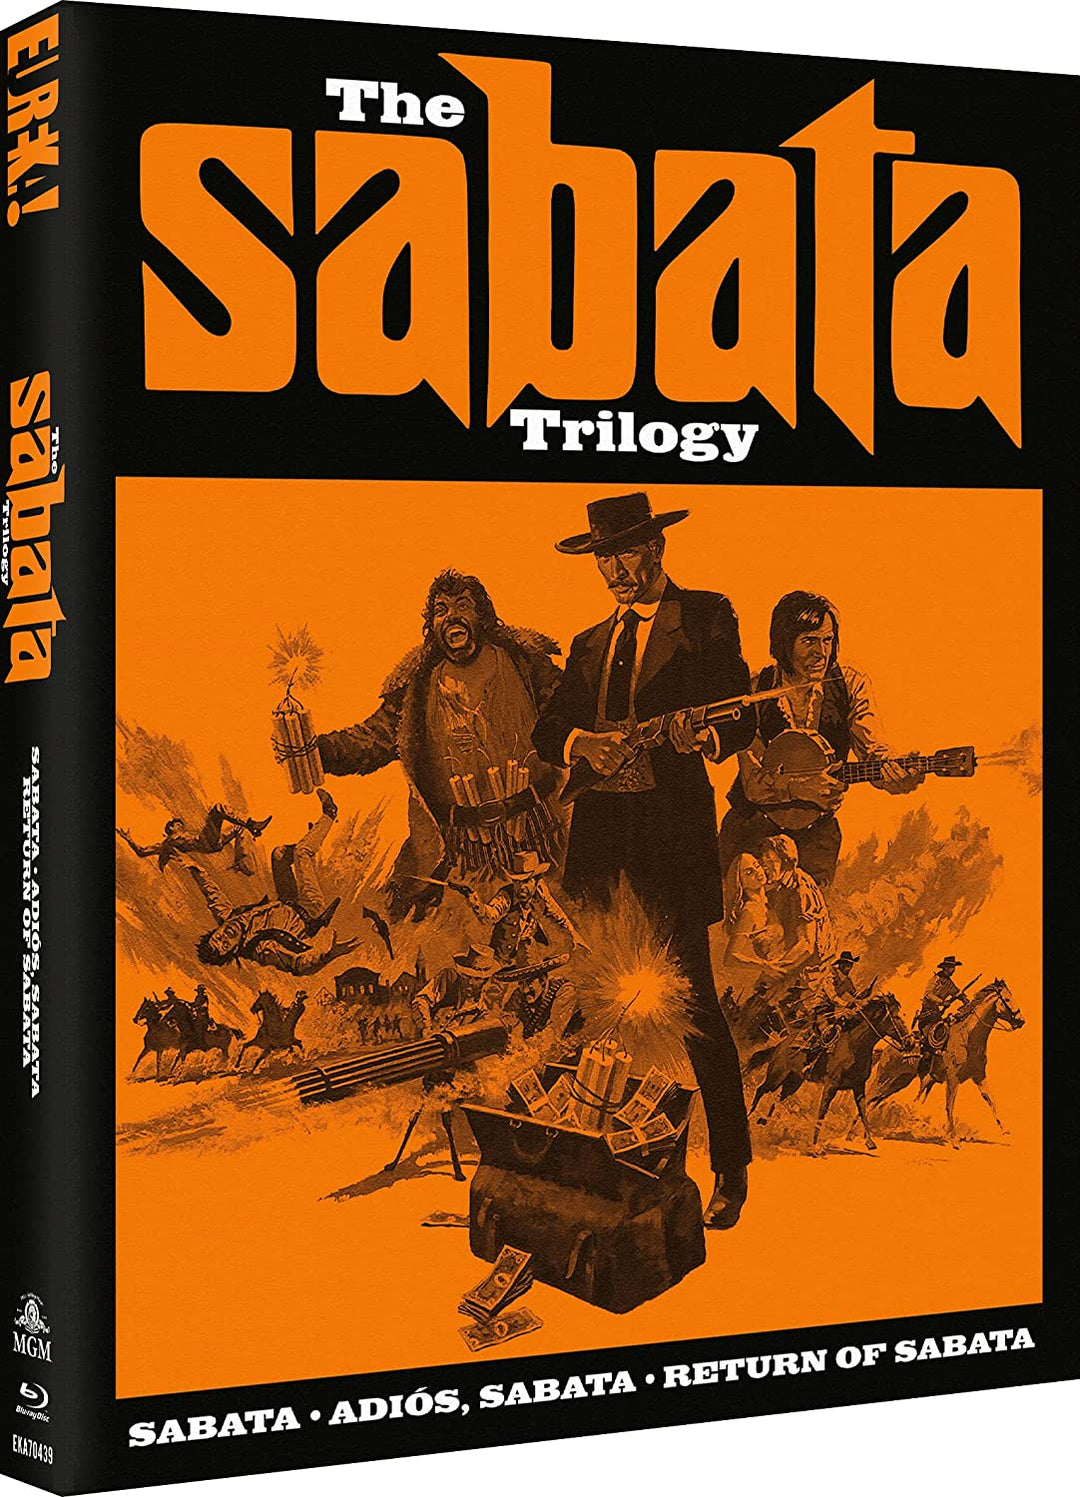 THE SABATA TRILOGY [Sabata, Adis Sabata, Return of Sabata] (Eureka Classics) [Blu-ray]